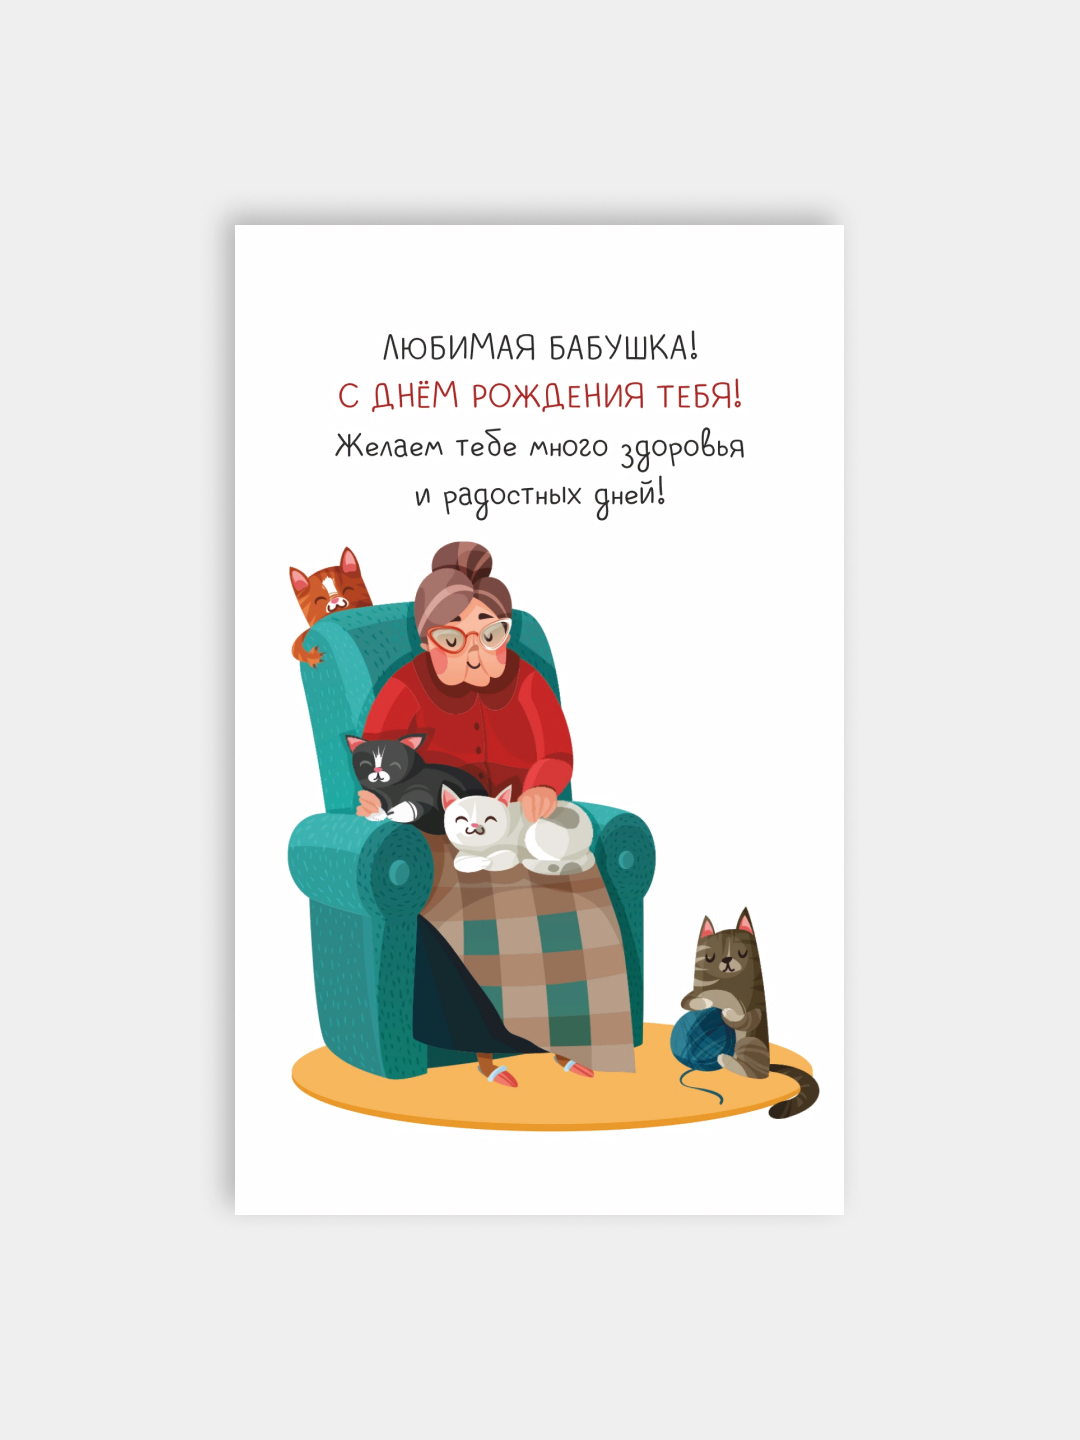 Идеи своими руками: открытки на день рождения для бабушки